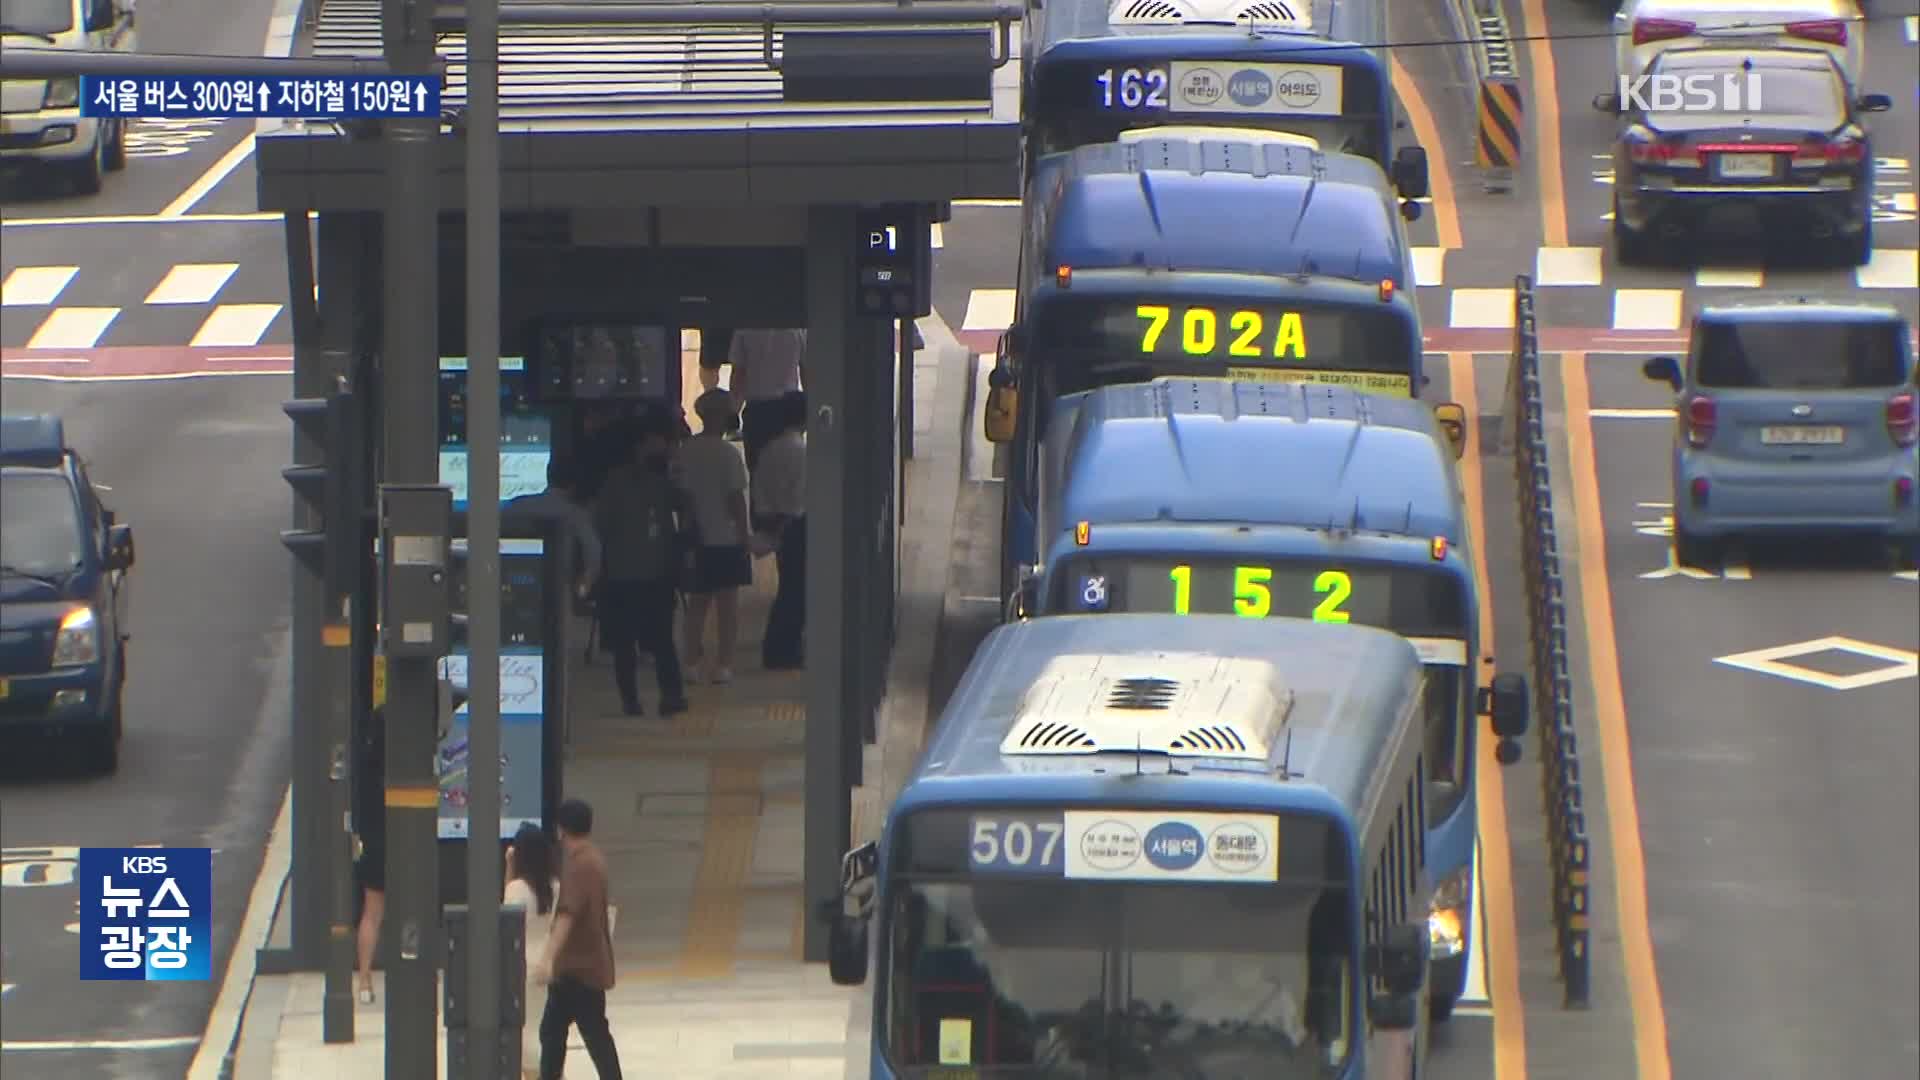 서울 버스요금 다음 달 300원 인상…지하철은 10월 150원 인상